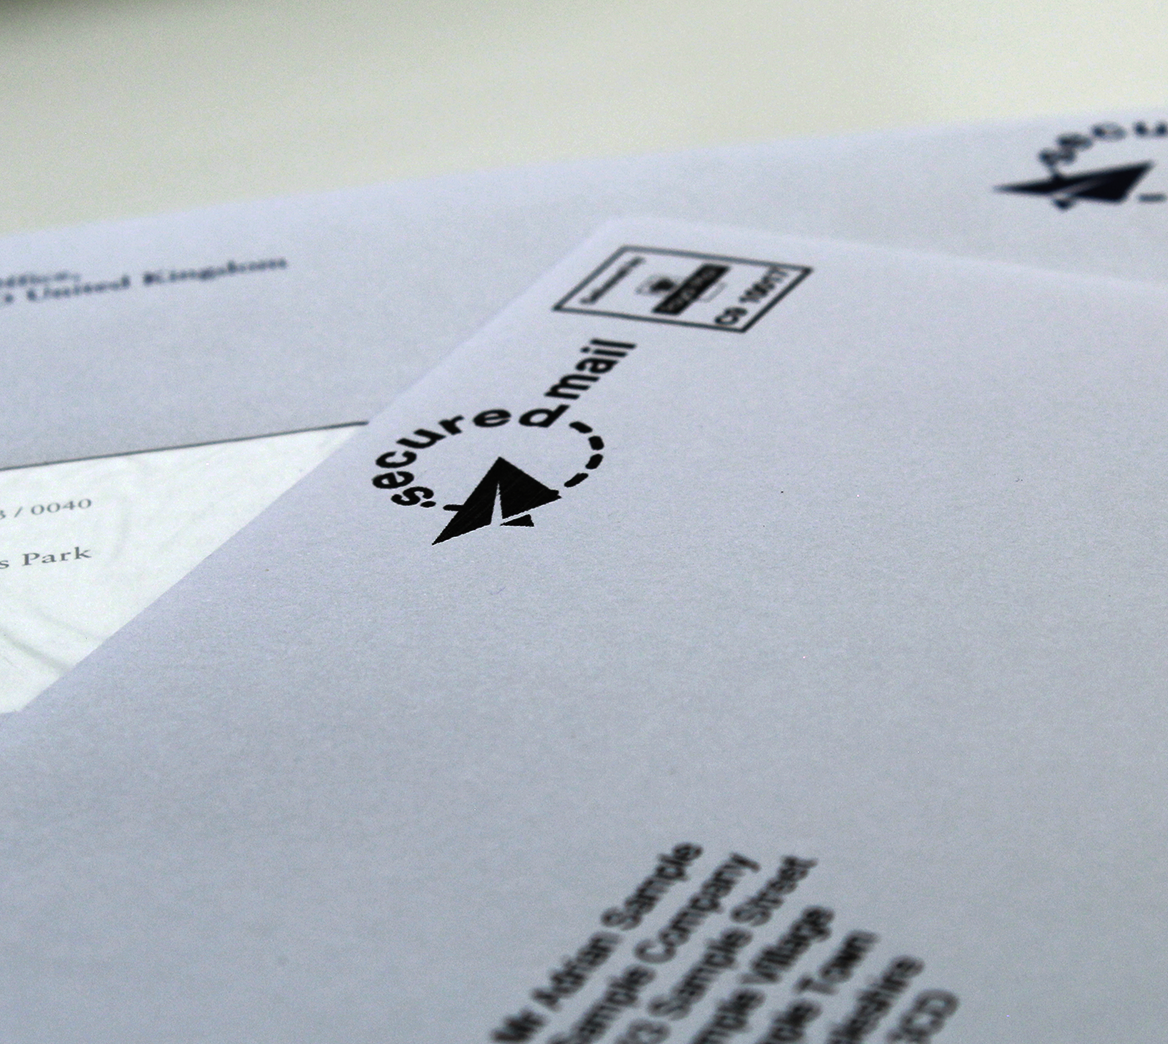 Mailing envelopes